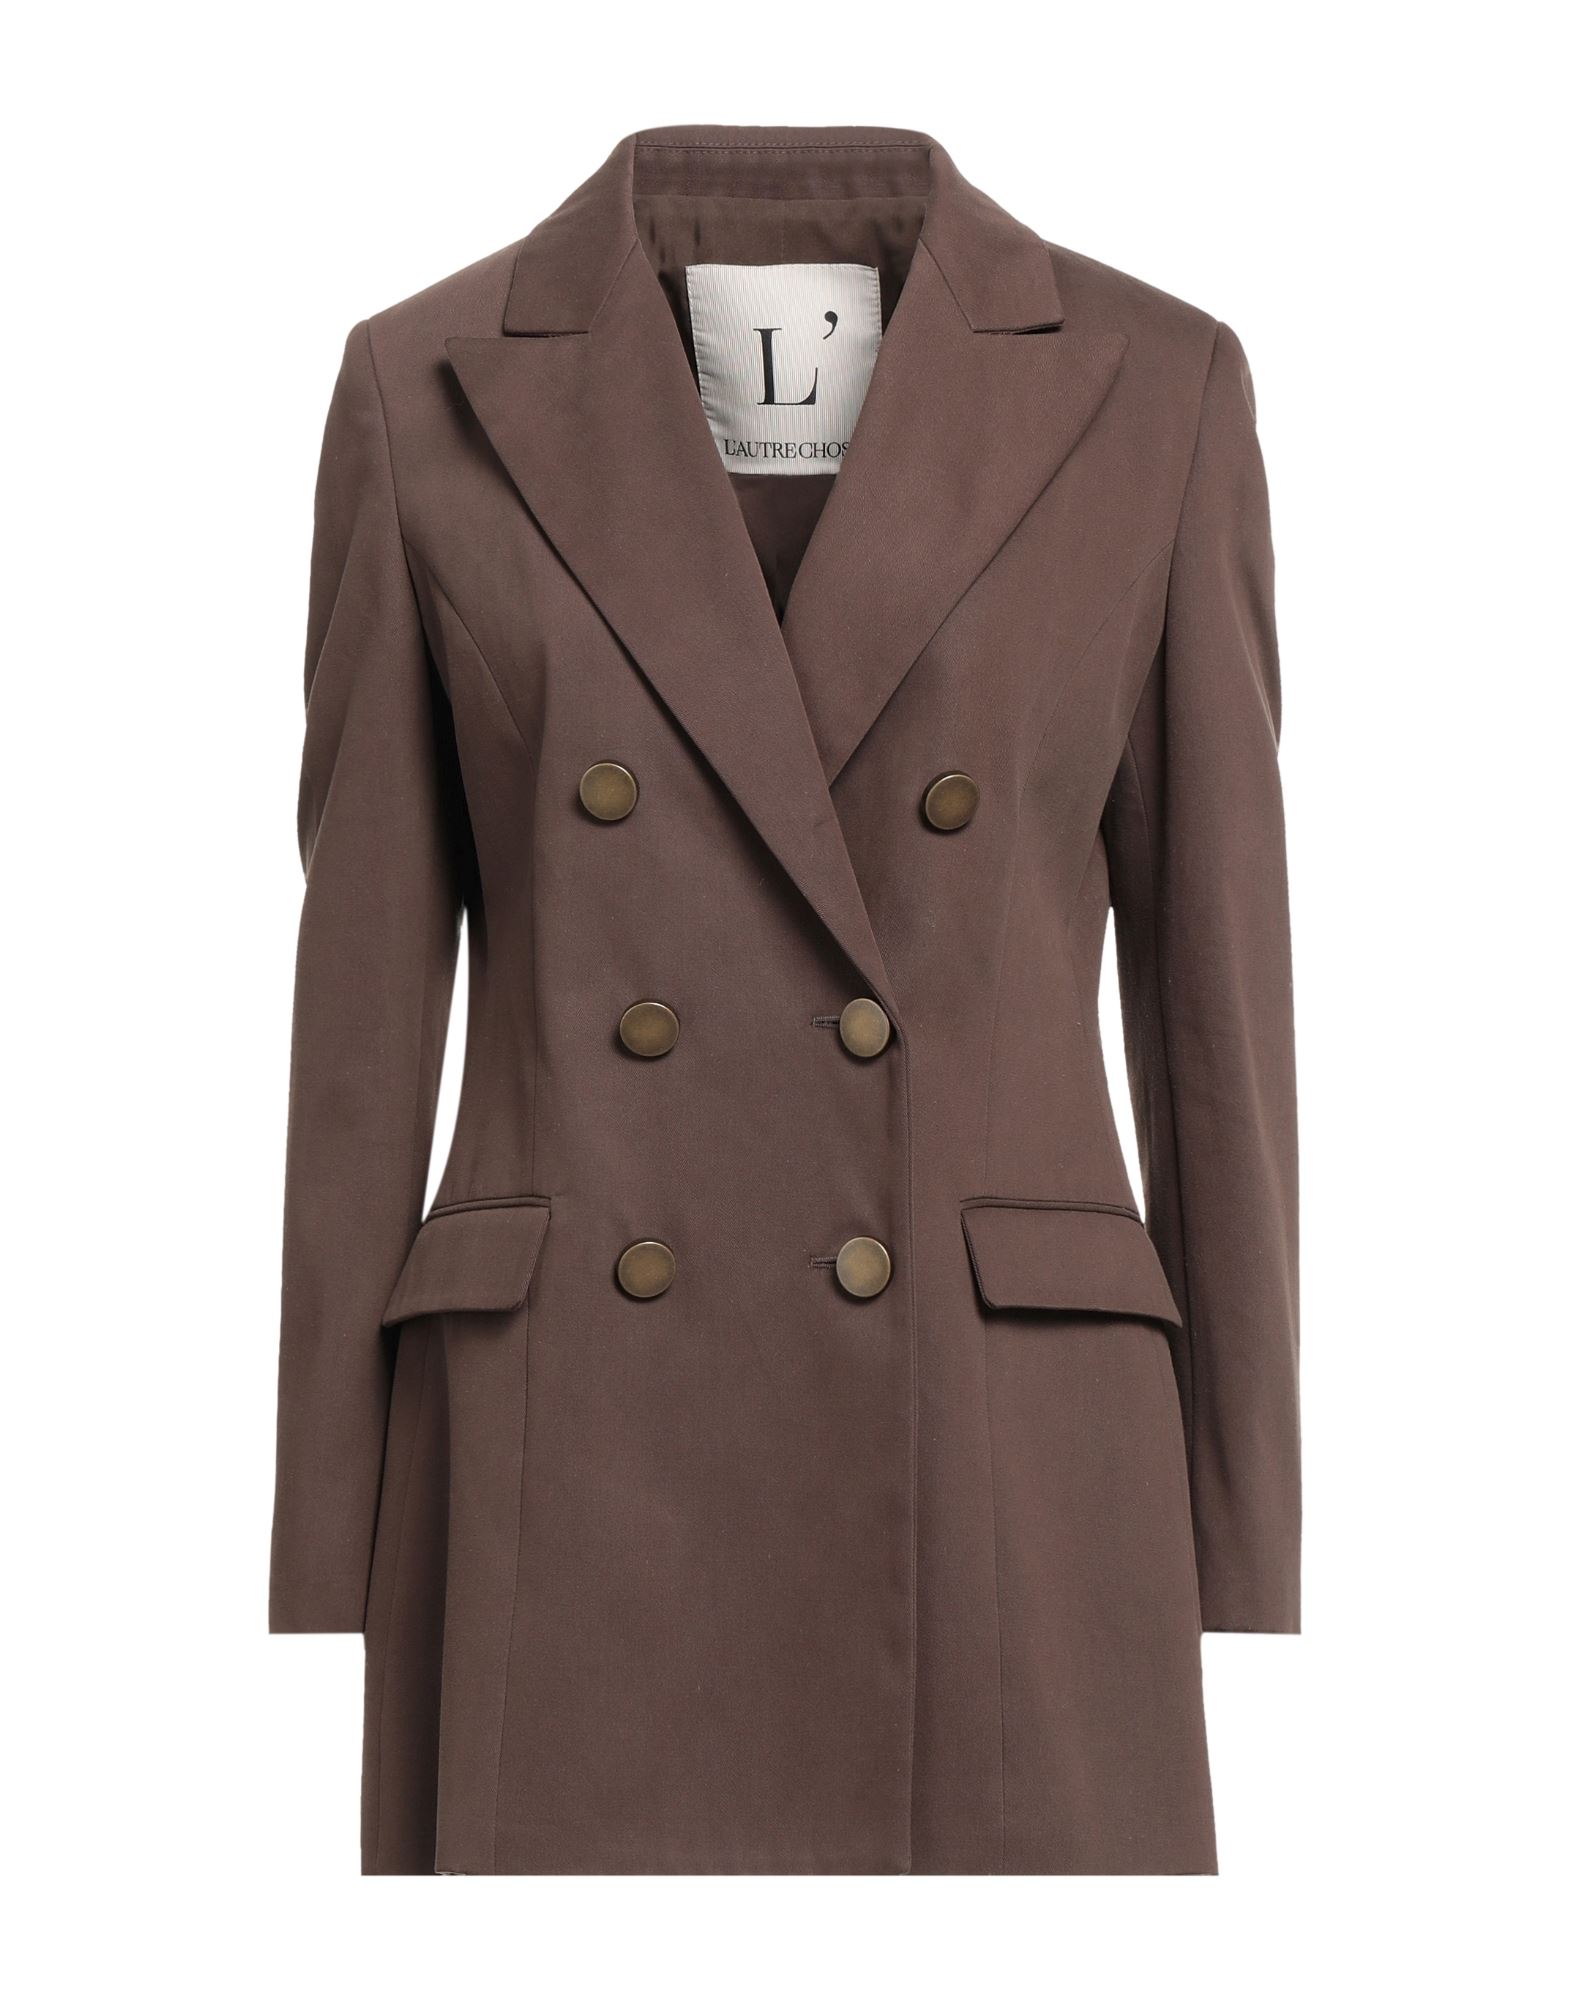 L'autre Chose L' Autre Chose Woman Suit Jacket Brown Size 4 Cotton